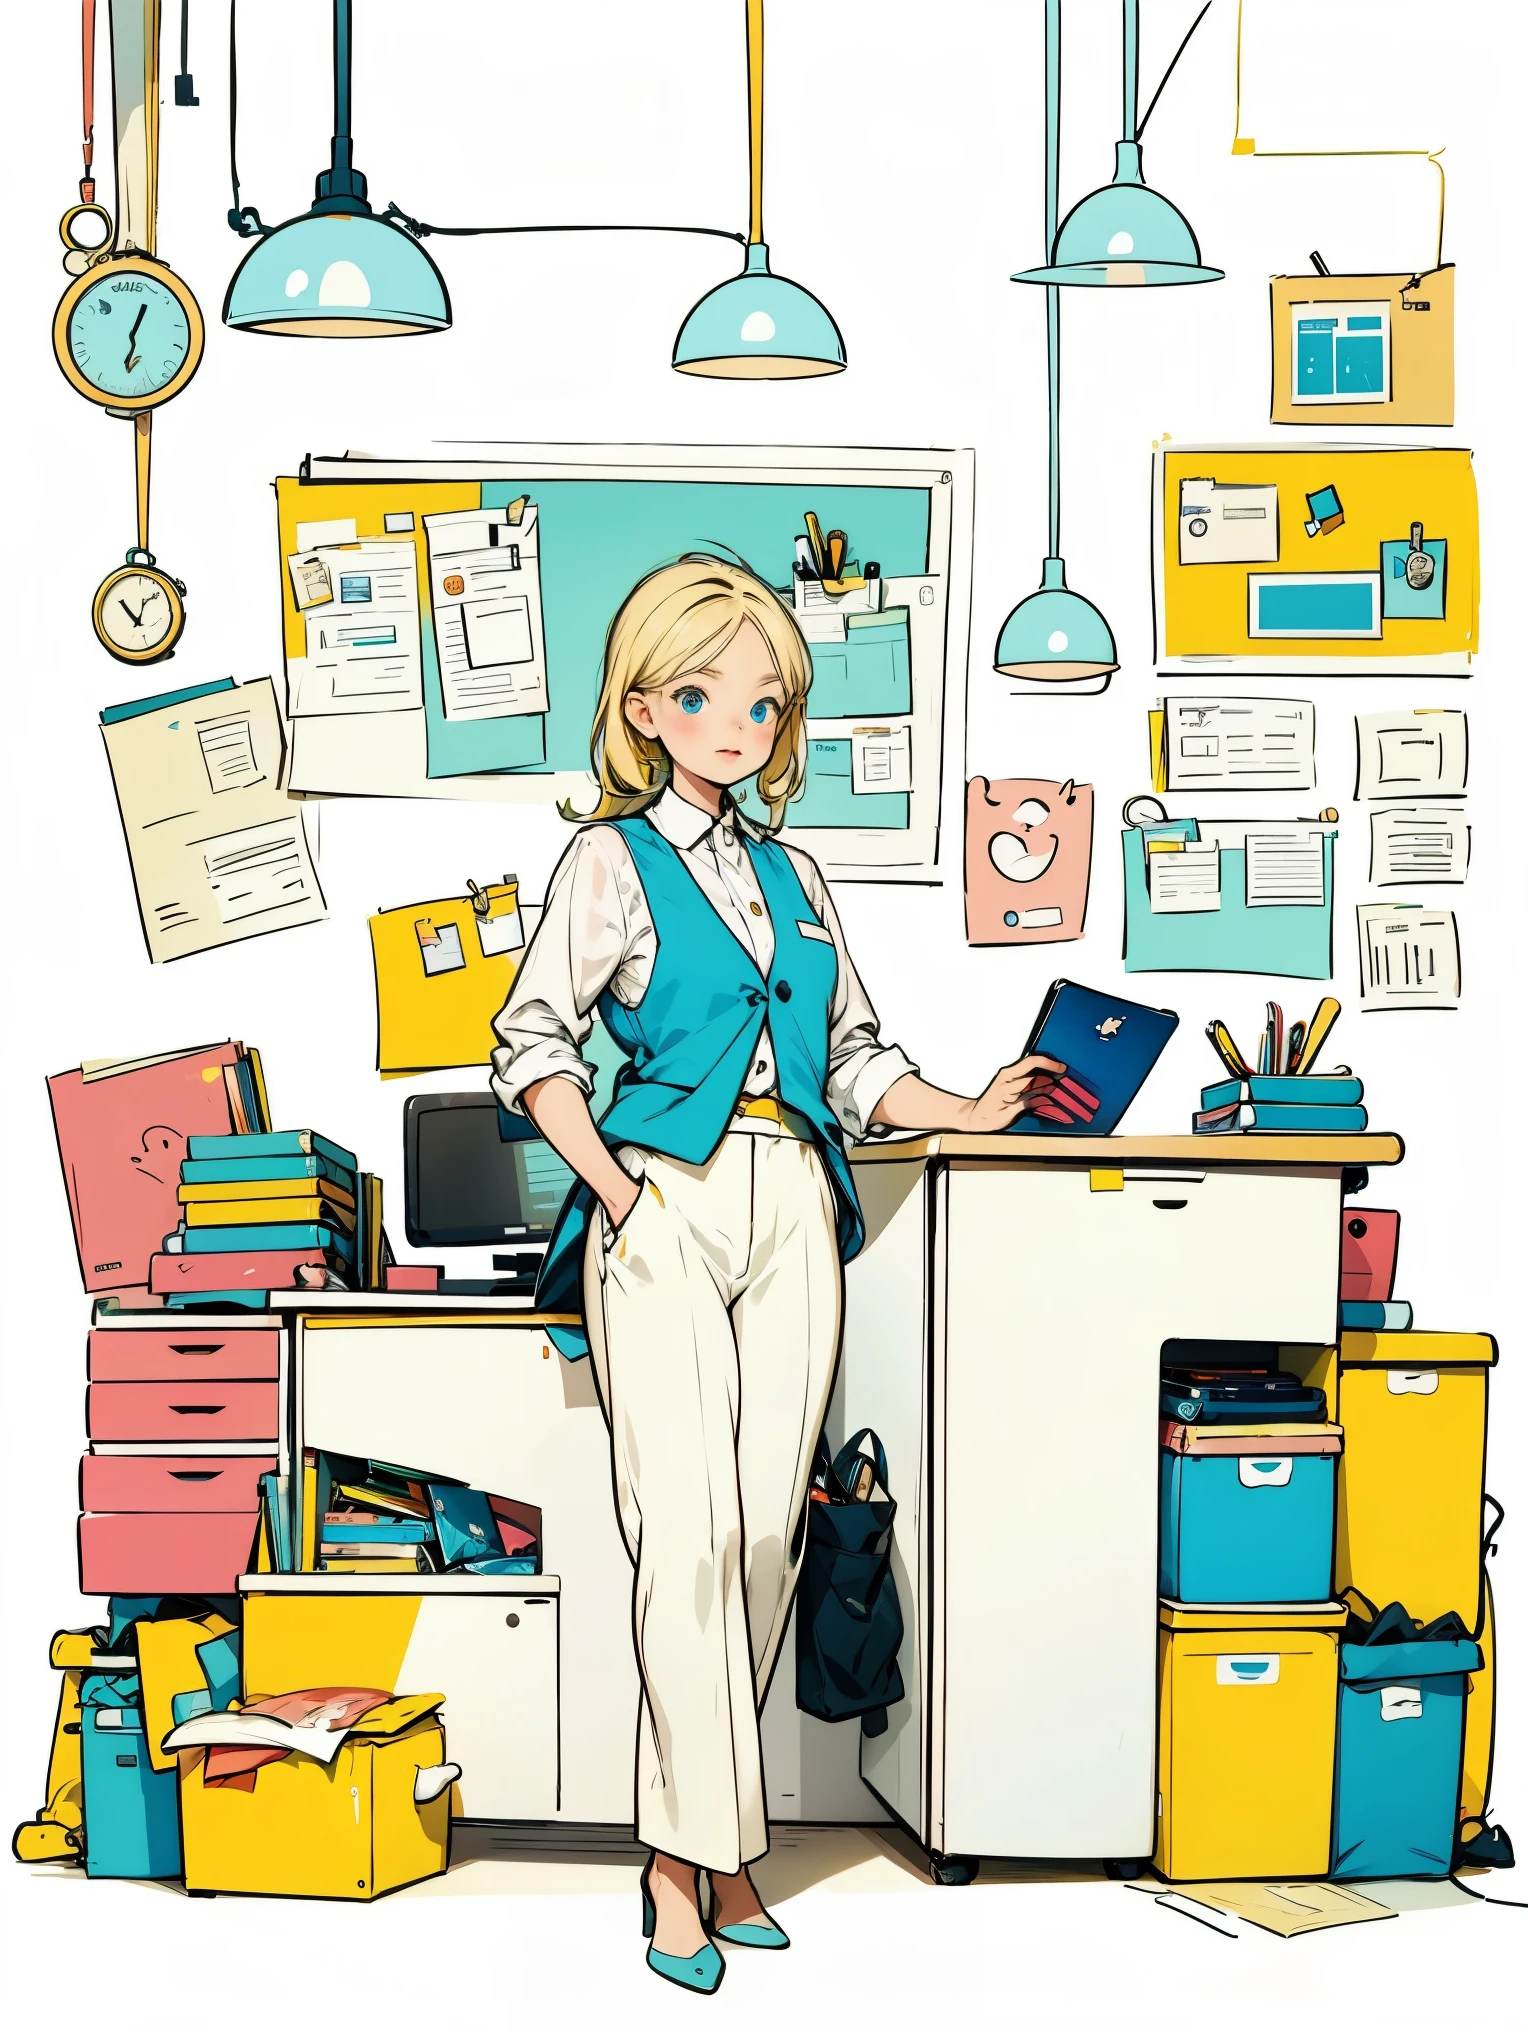 1 名身穿白衬衫和蓝色背心的女孩,裤子,常设,在办公室工作,长发,微笑,简单的背景